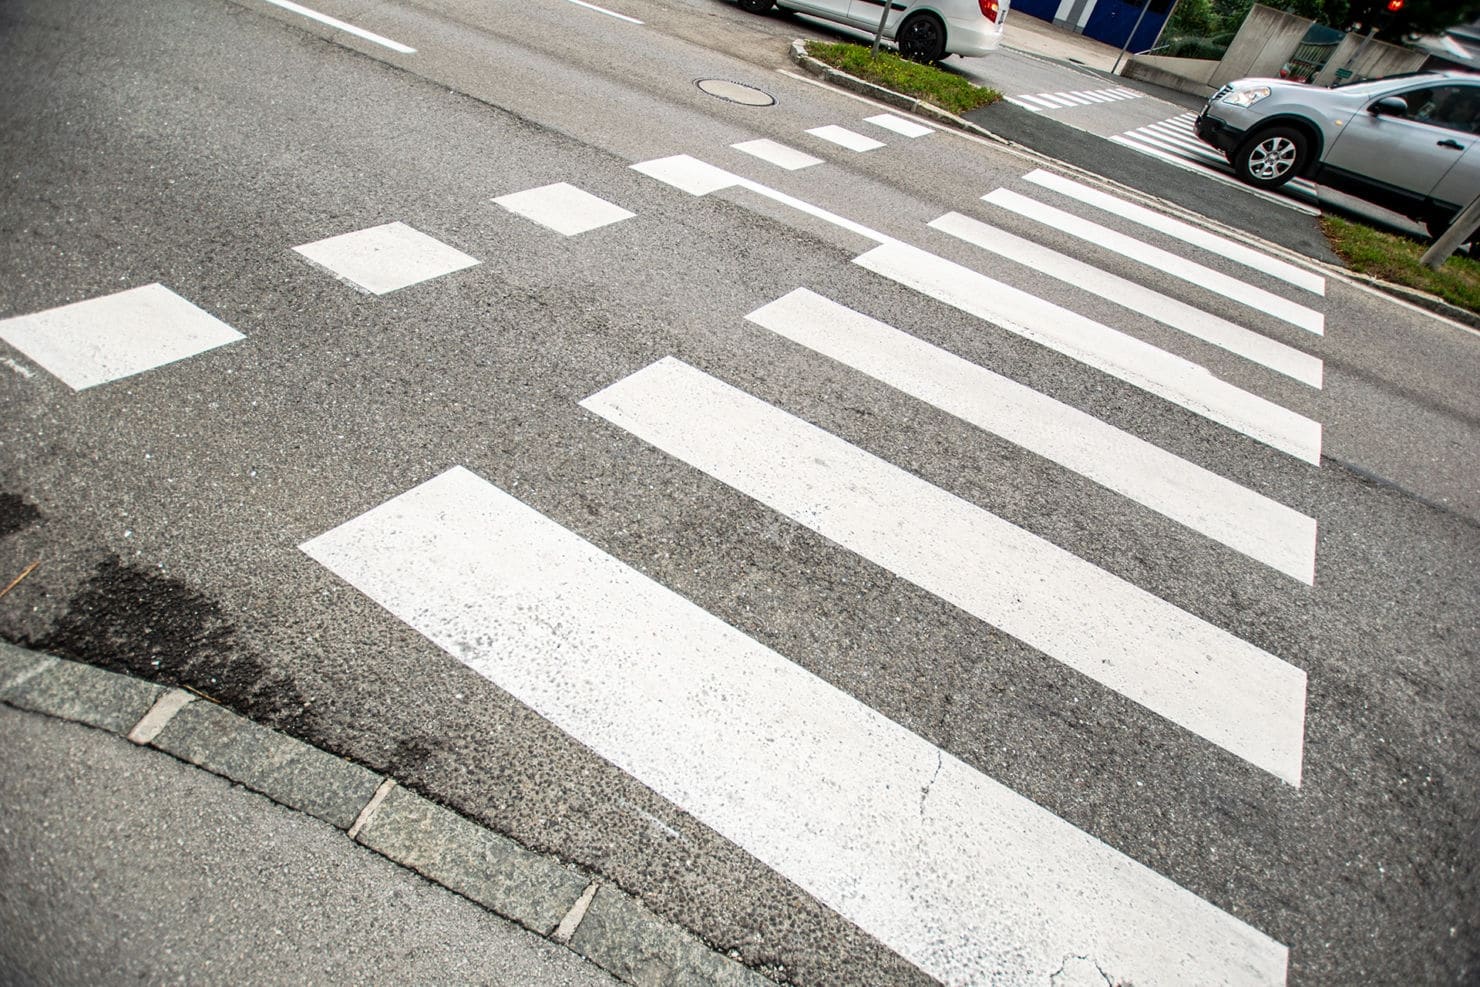 Beim Überqueren eines Schutzweges wurde der 21-jährige Fußgänger aus dem Bezirk Klagenfurt von dem 77-jährigen PKW-Lenker übersehen.